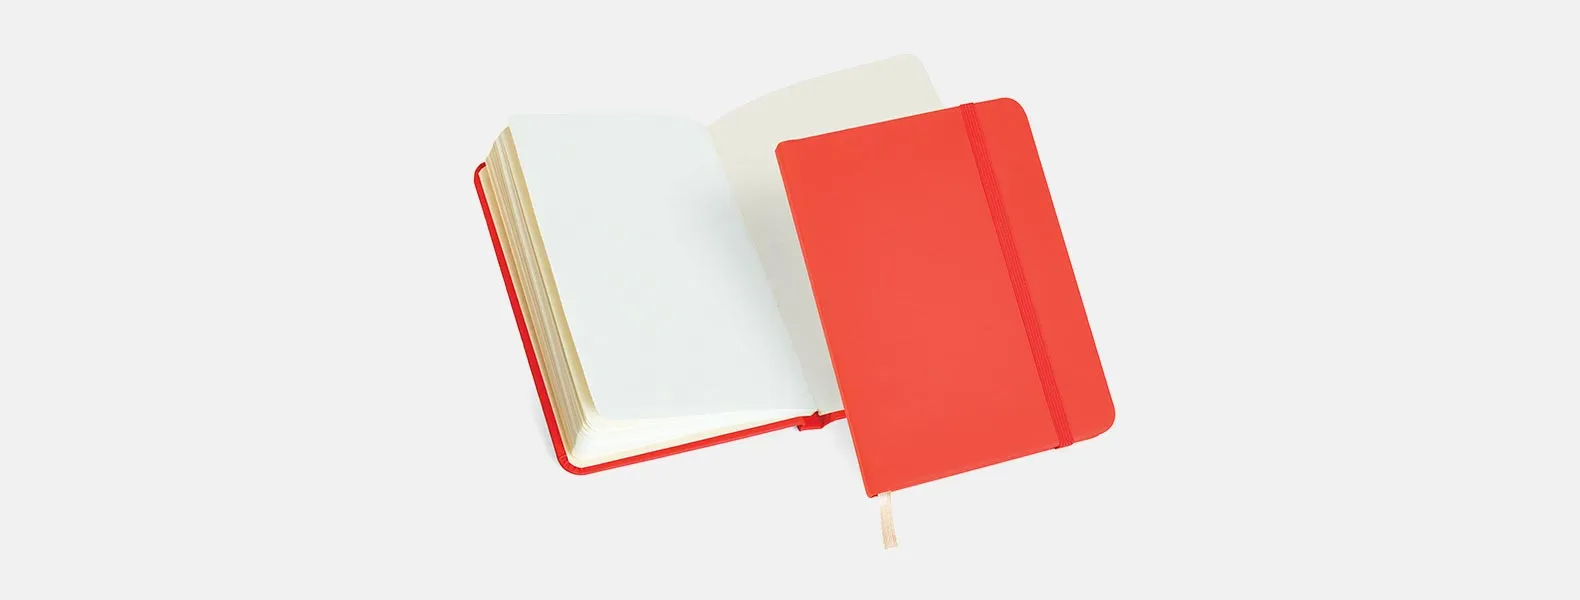 Caderno para anotações vermelho com capa dura. Conta com 80 folhas, porta caneta e elástico para fechamento. Gramatura da folha de 70 g/m2.